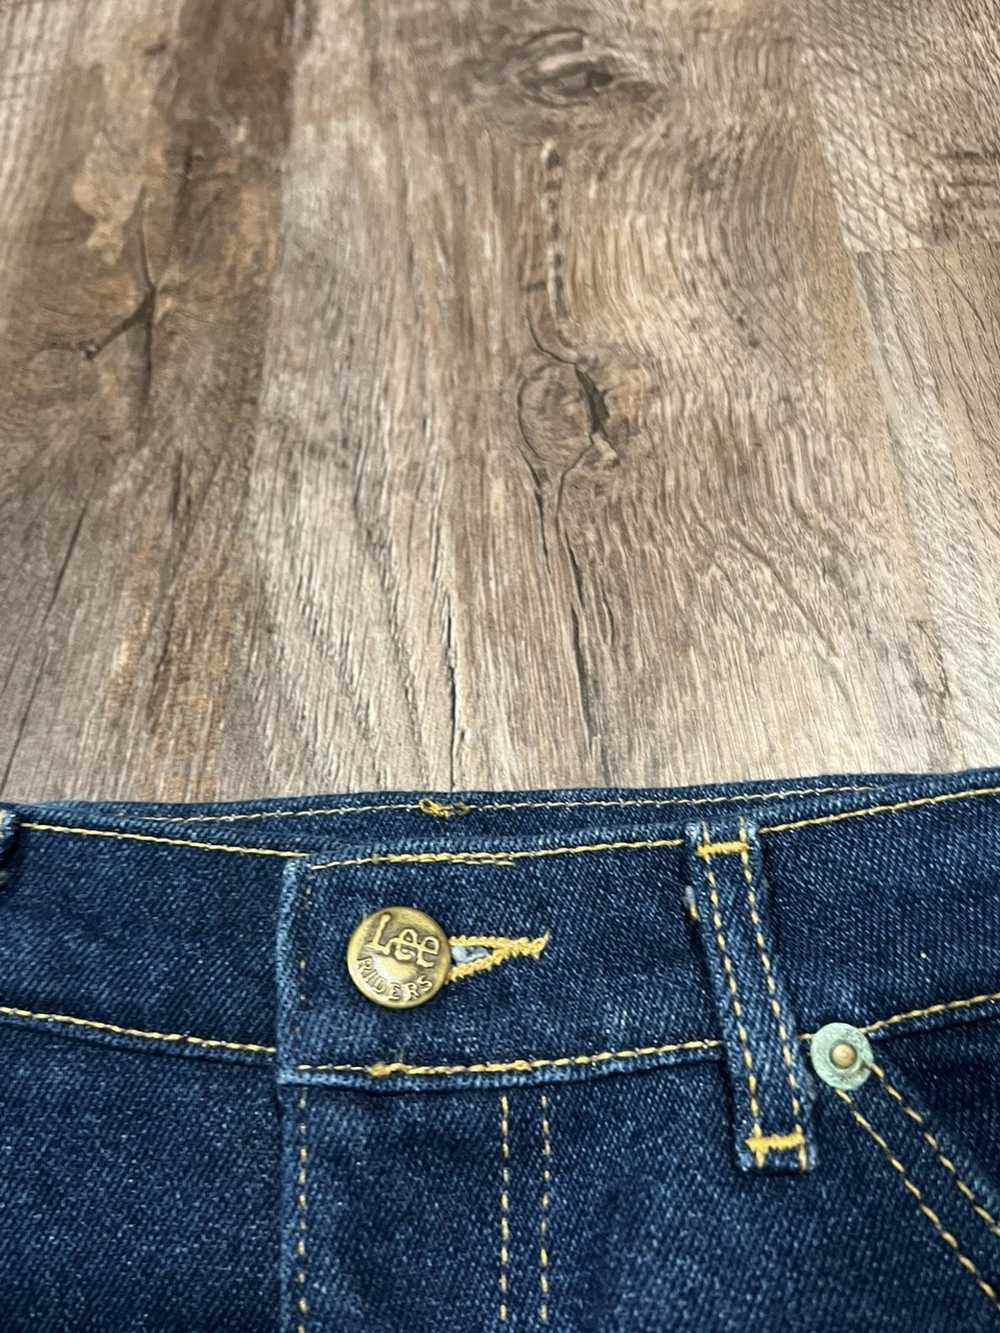 Lee × Vintage Vintage Lee Jeans - image 4